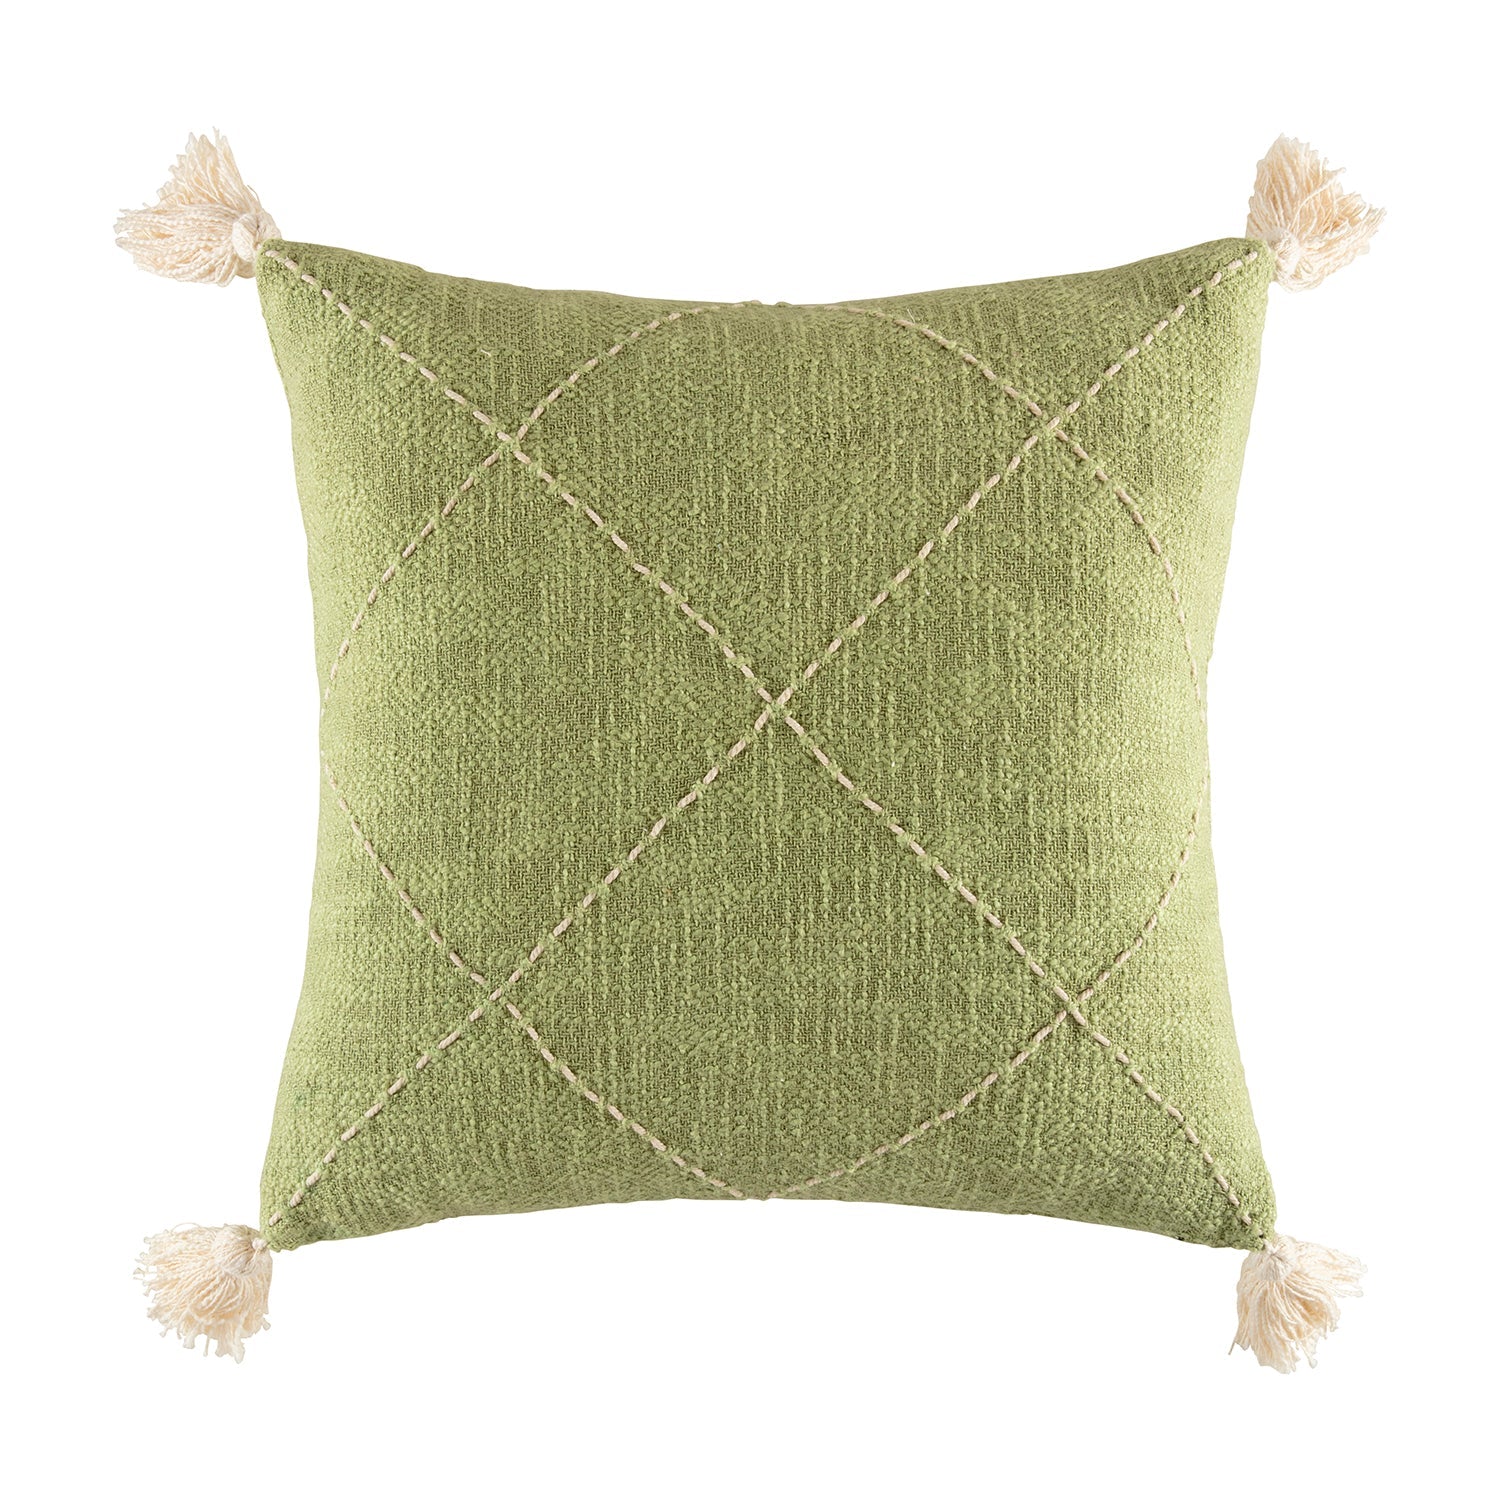 Savi Cushion Cushion KAS AUSTRALIA Olive Square 50x50cm